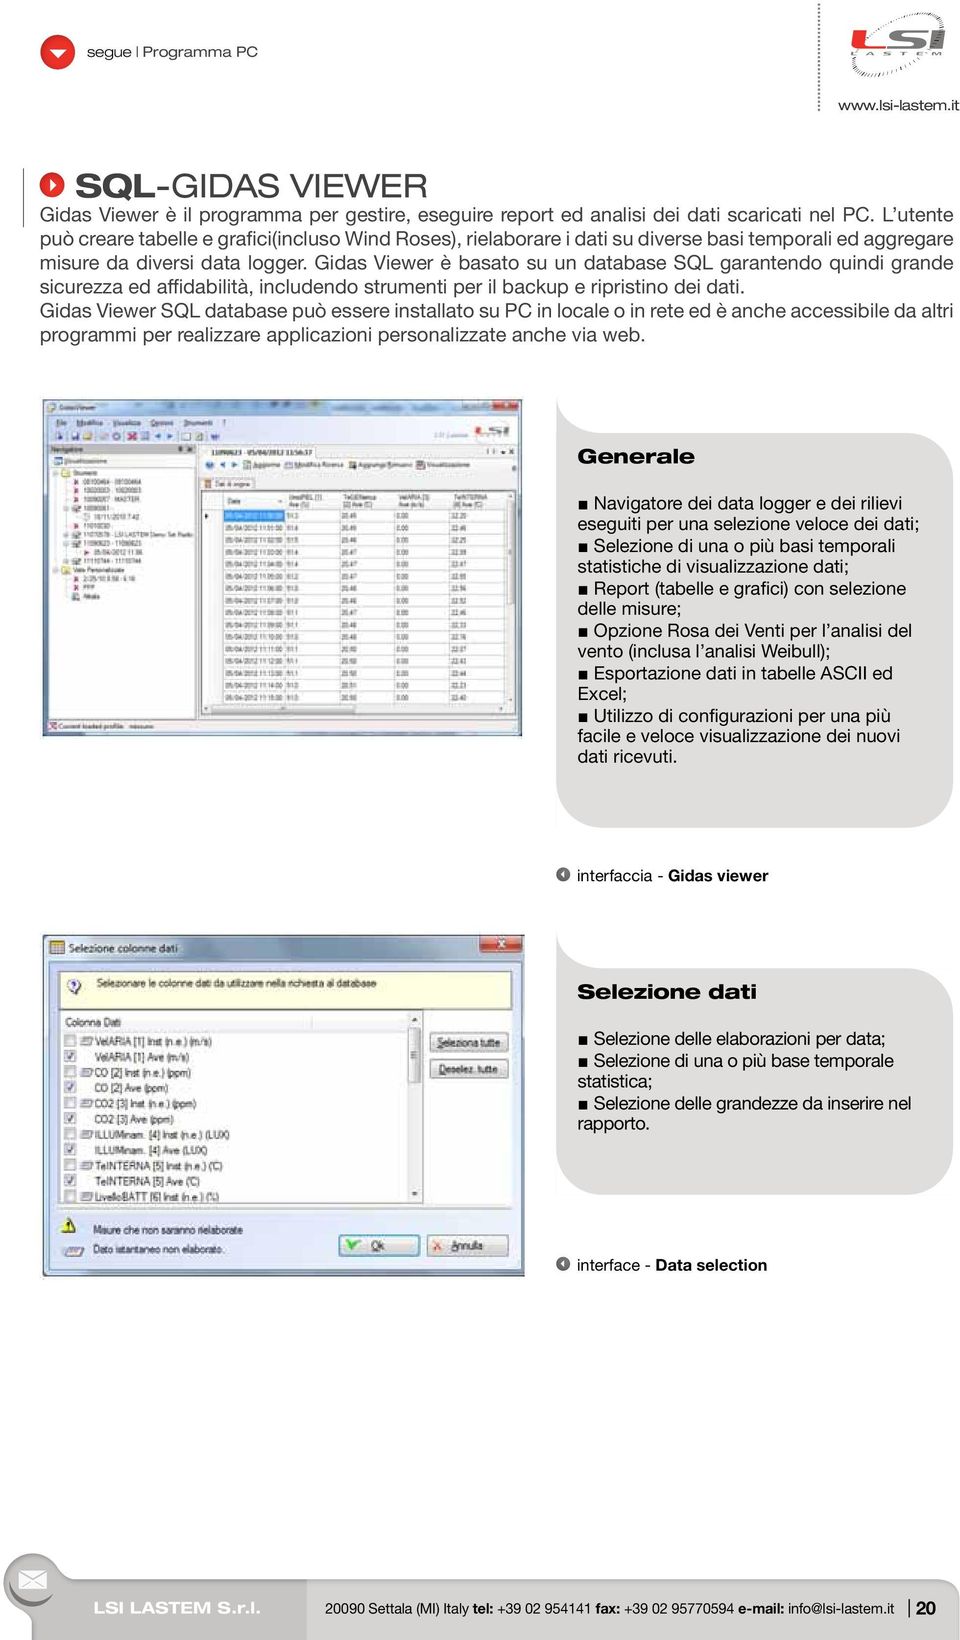 Gidas Viewer è basato su un database SQL garantendo quindi grande sicurezza ed affidabilità, includendo strumenti per il backup e ripristino dei dati.